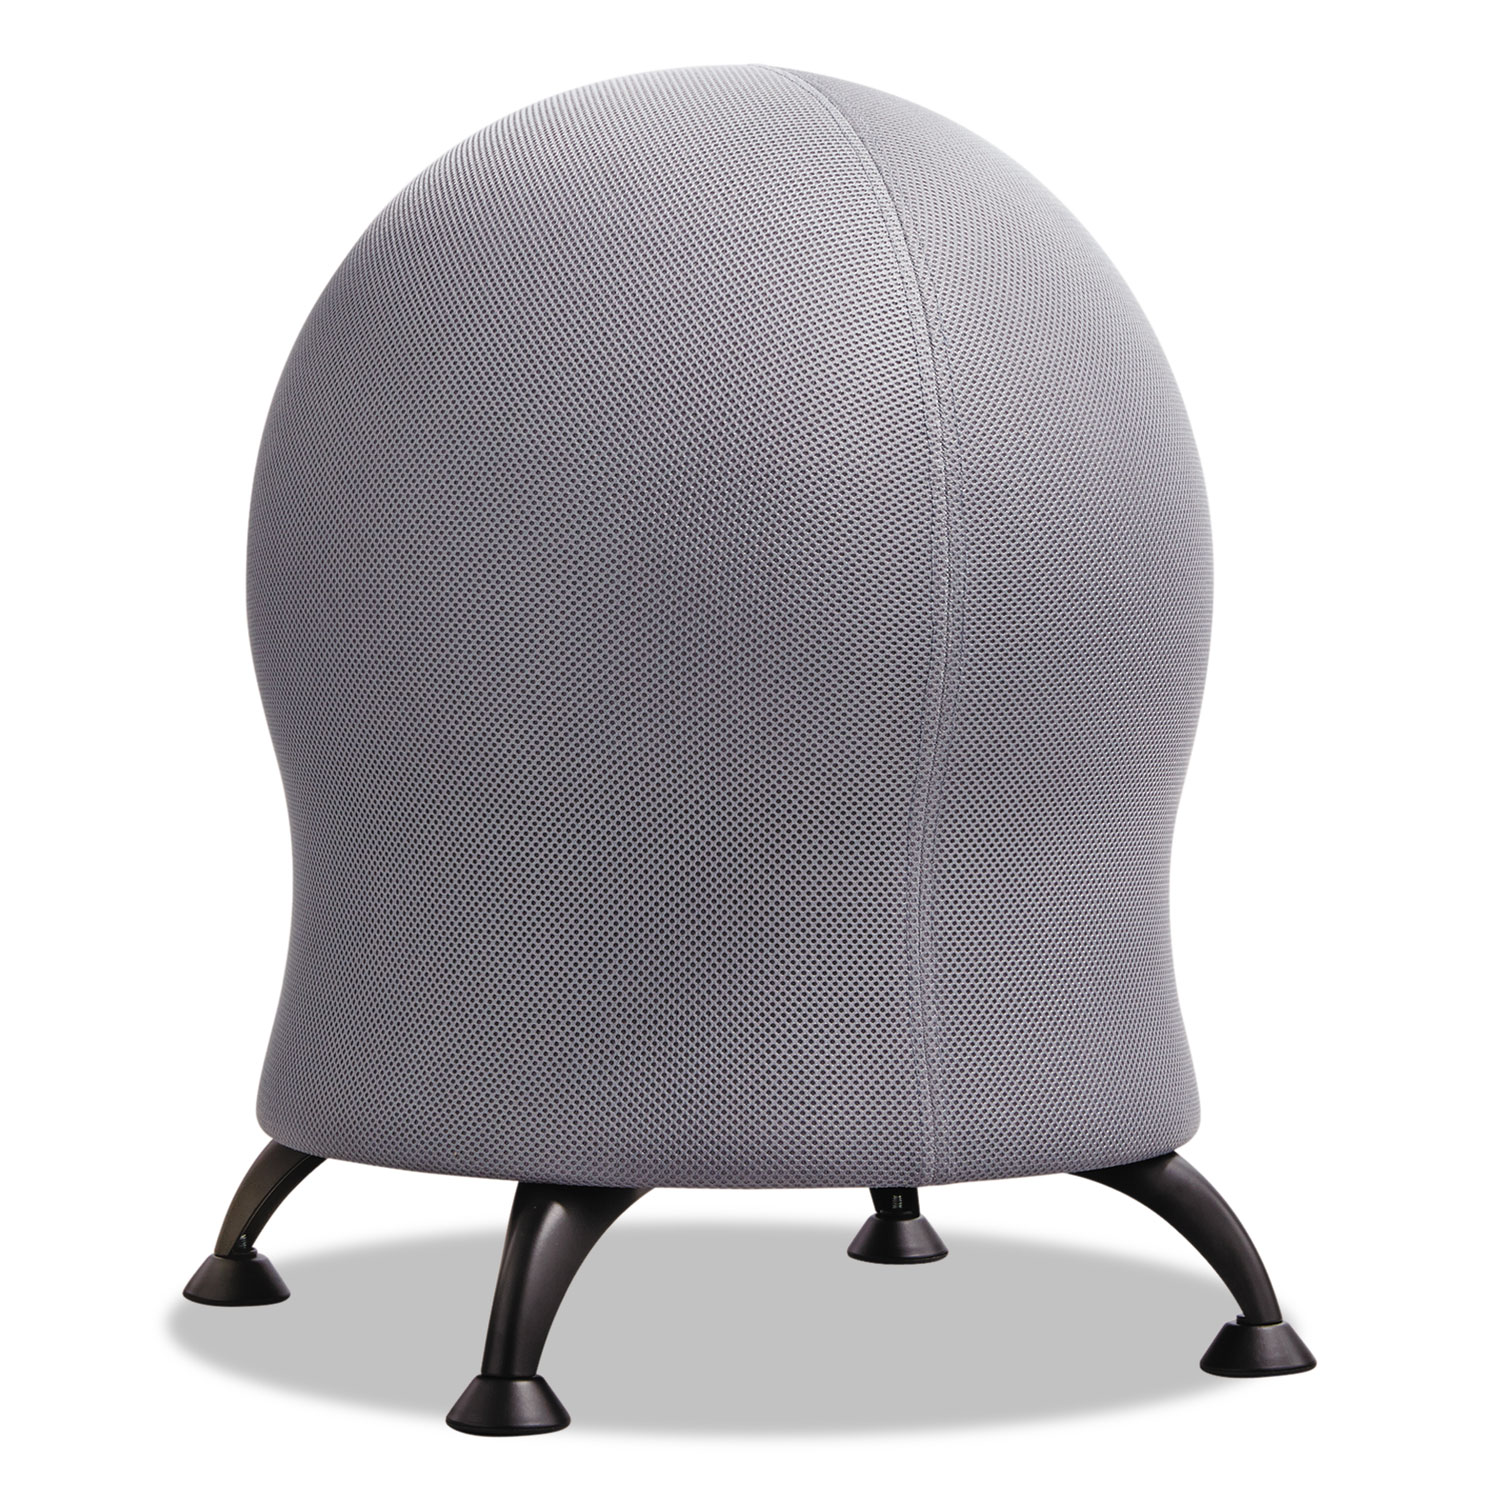  Safco 4750GR Zenergy Ball Chair, Gray Seat/Gray Back, Black Base (SAF4750GR) 